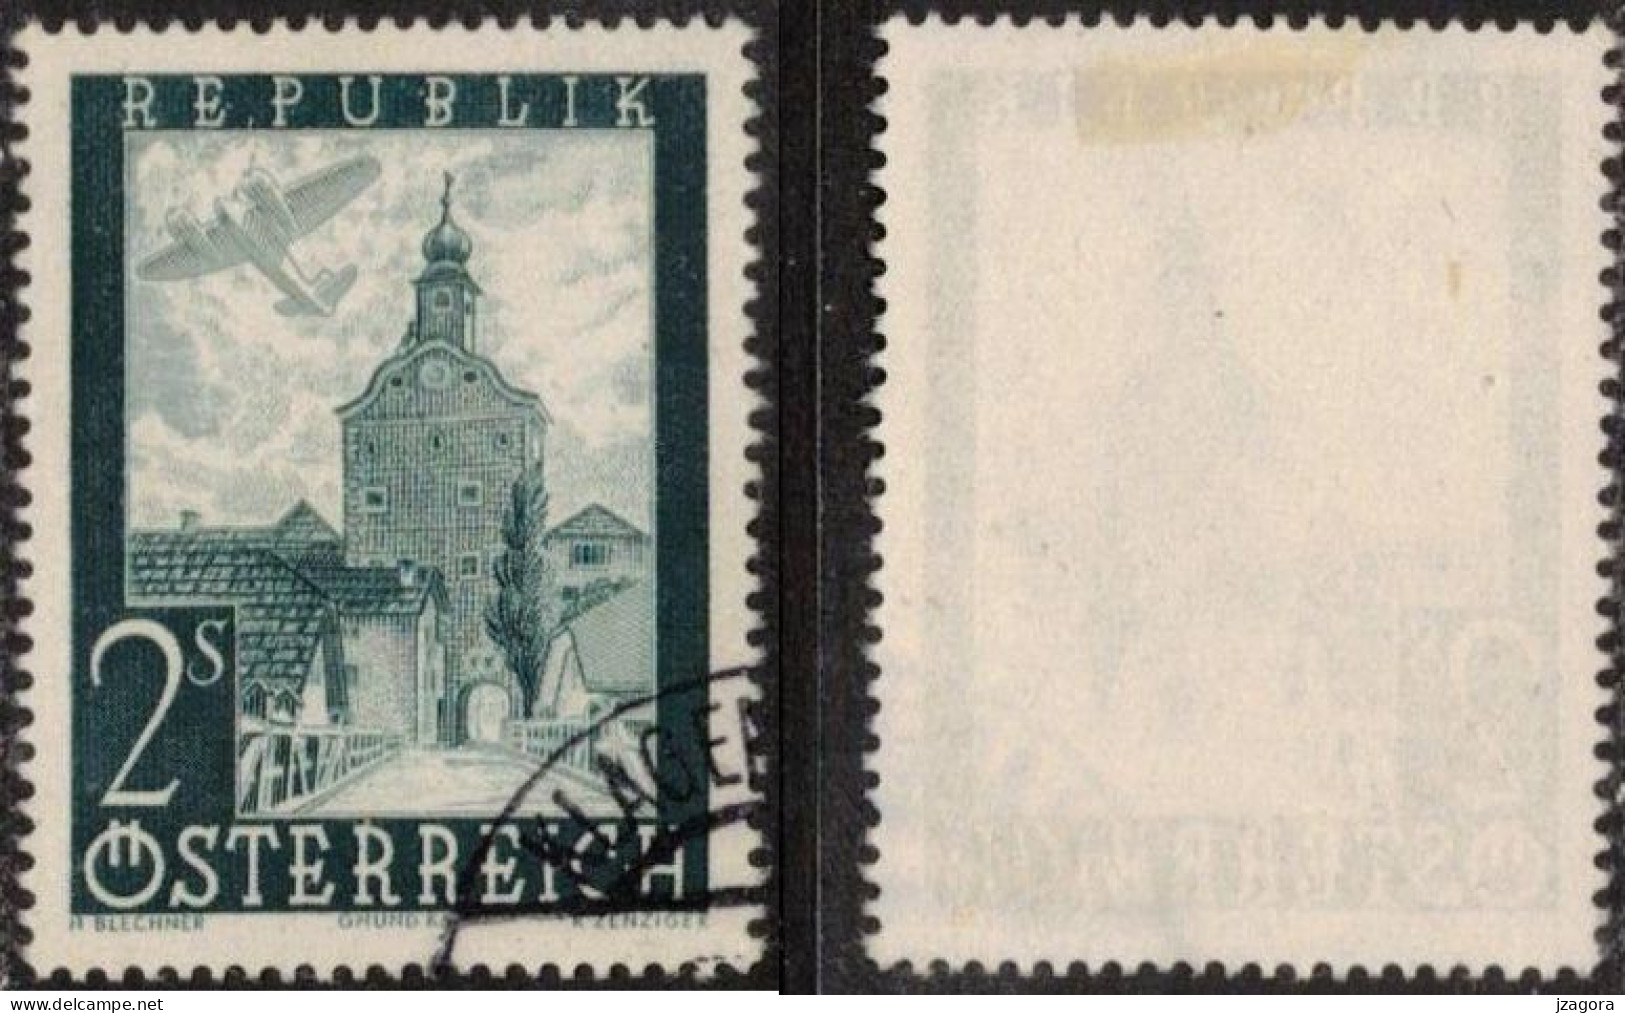 ARCHITECTURE HISTORY STADTTURM CITY TOWER GRUMD AUSTRIA ÖSTERREICH AUTRICHE 1947 MI 824 Sc C49 Flugpost Air Mail - Gebruikt